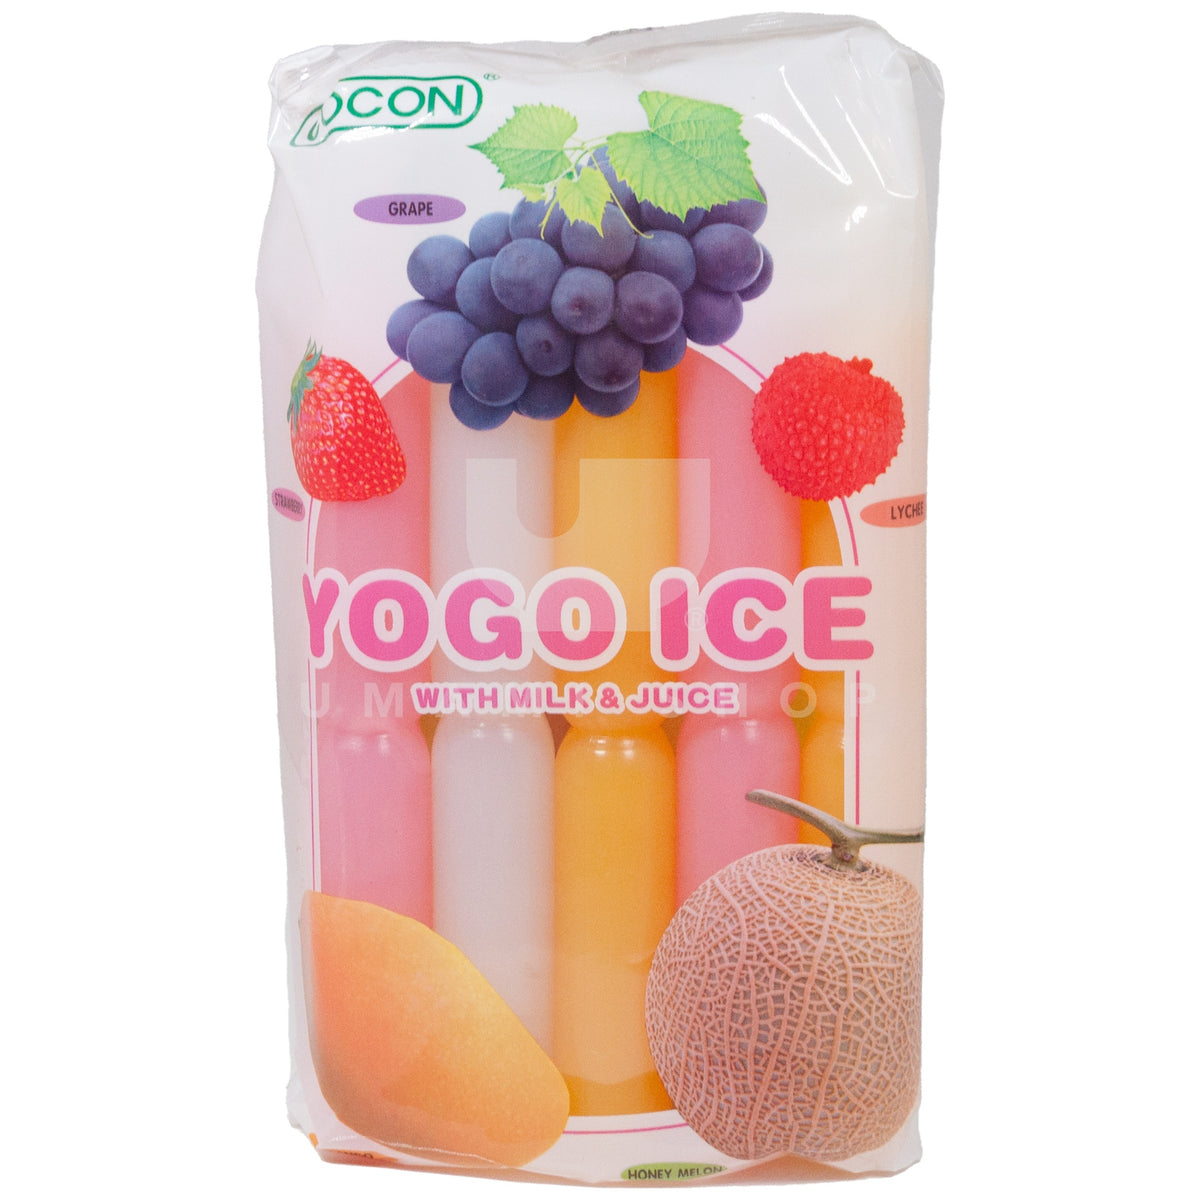 Yogo Ice with Milk & Juice